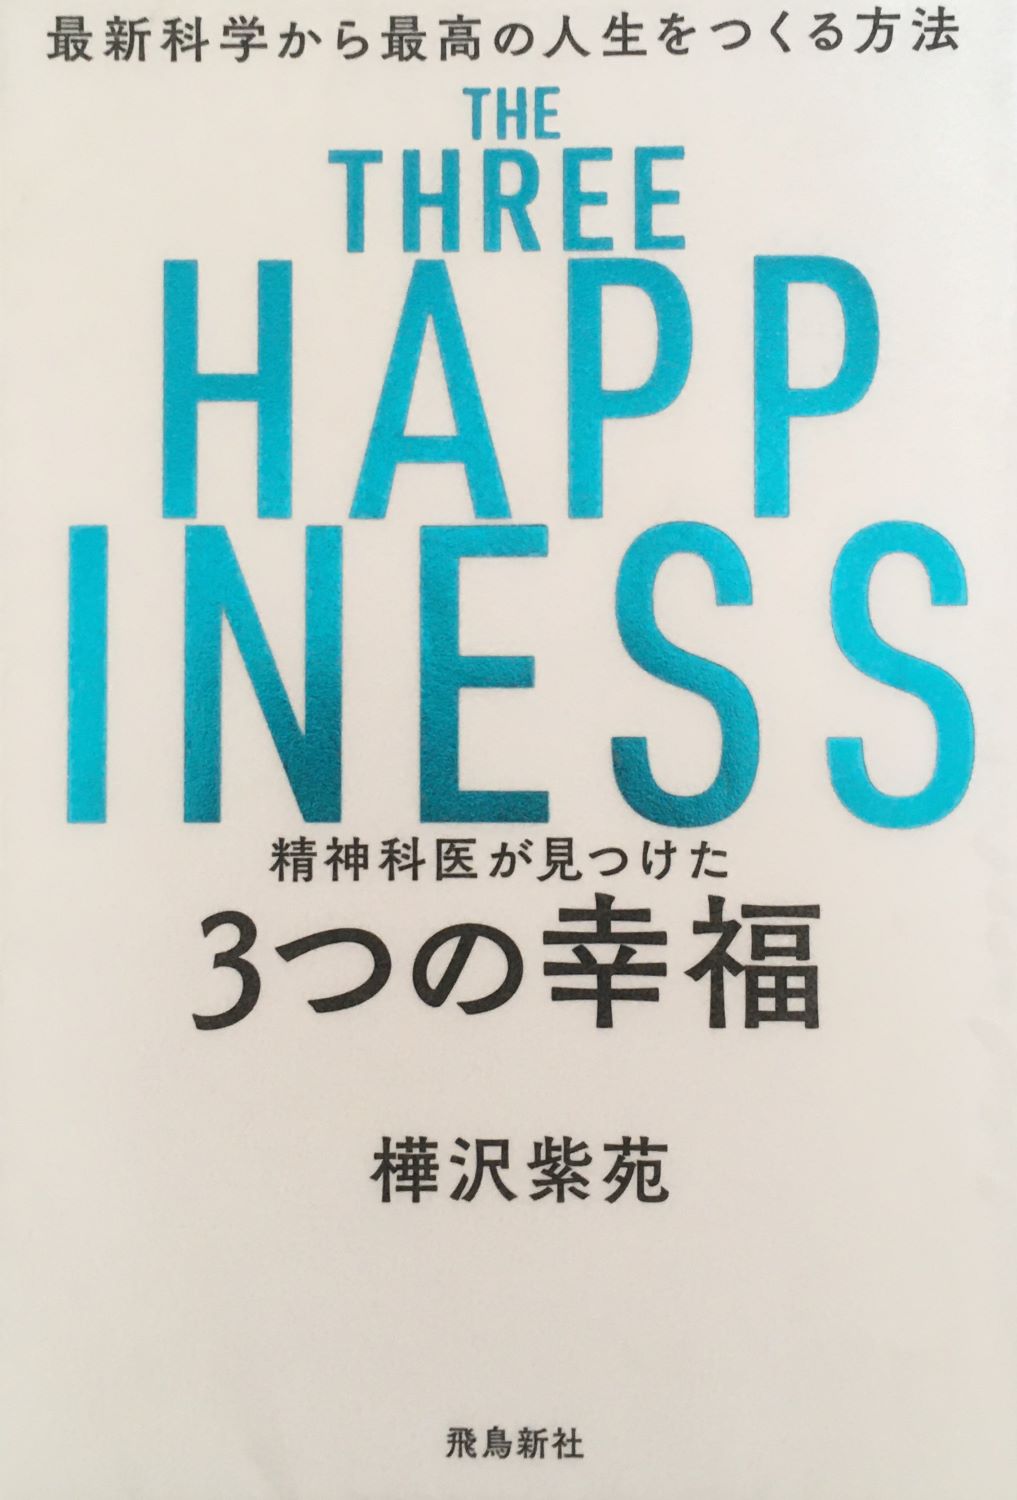 精神科医が見つけた 3つの幸福 最新科学から最高の人生をつくる方法